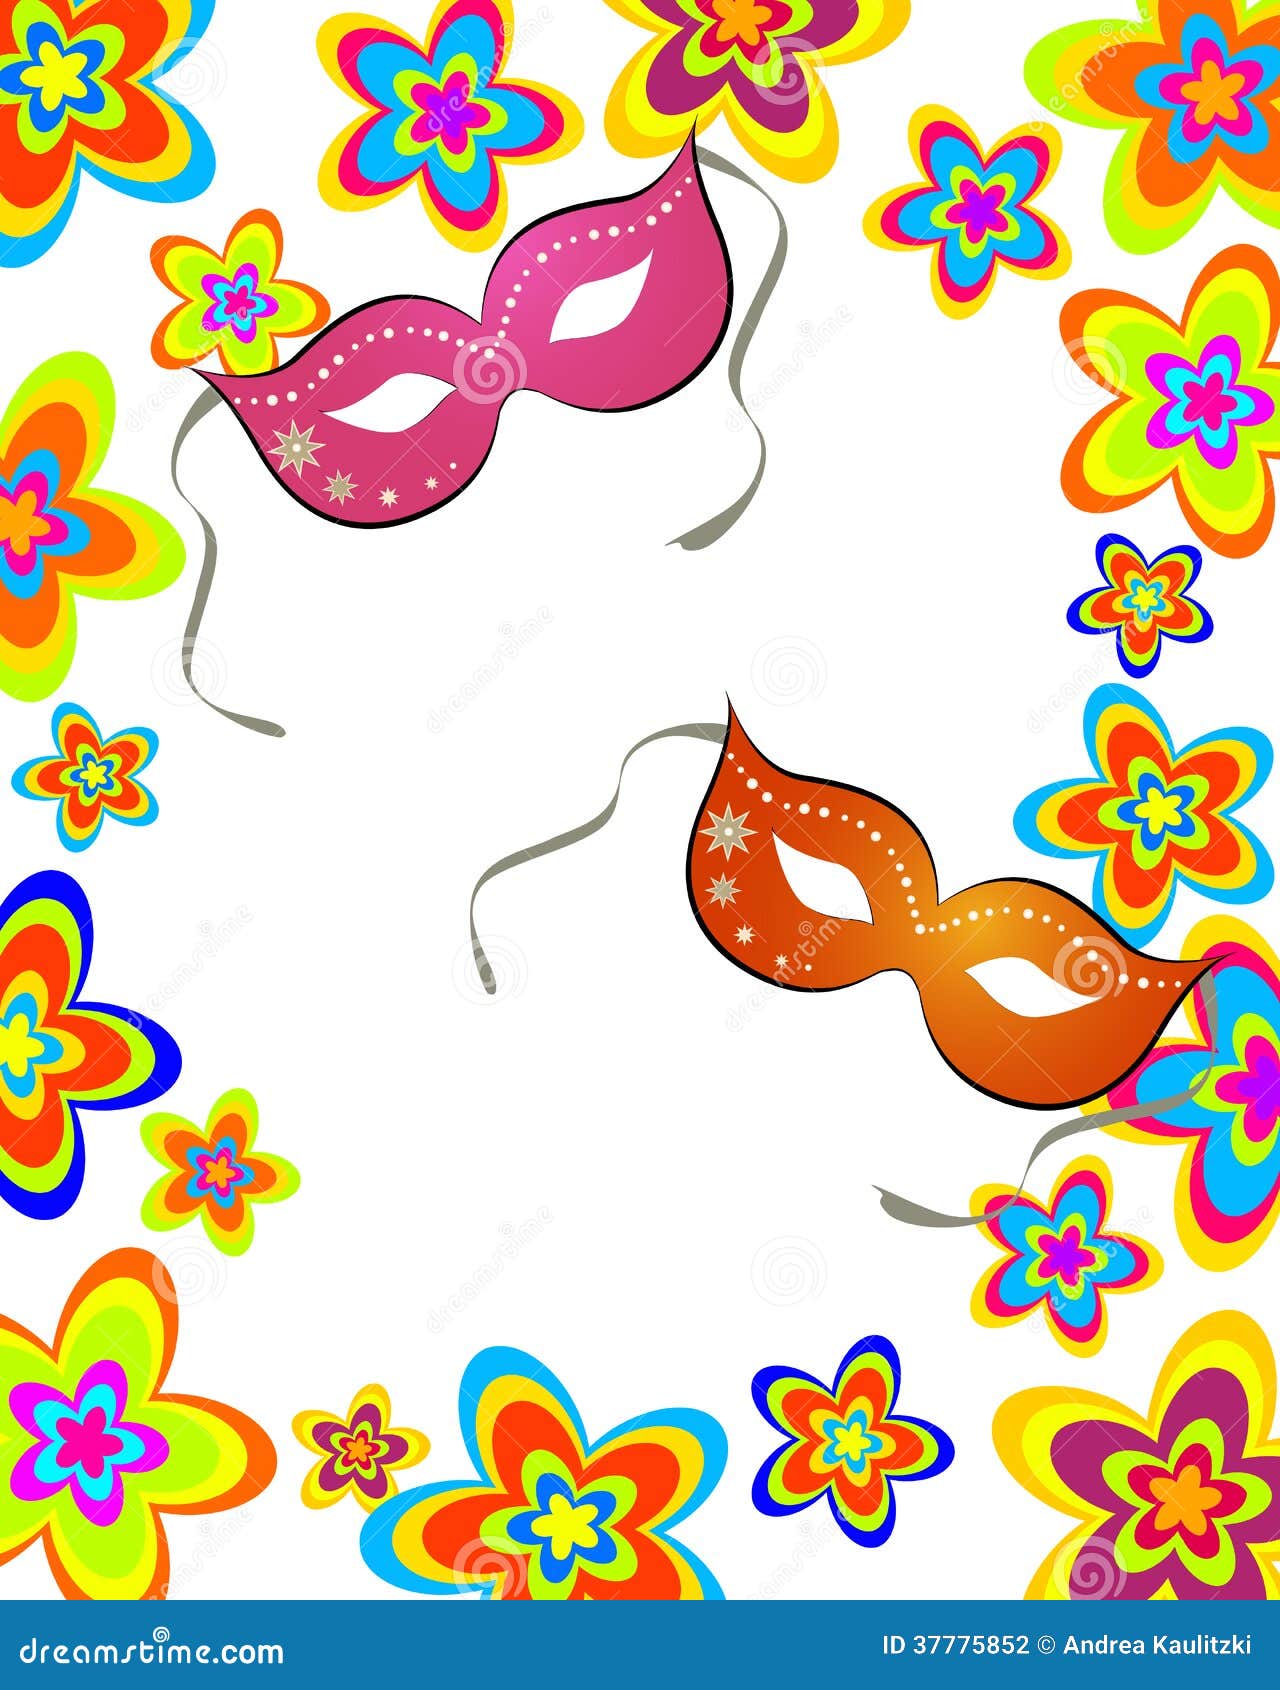 Feierkarte. Vector Illustration der Karnevalsmaske auf einem Blumenhintergrund